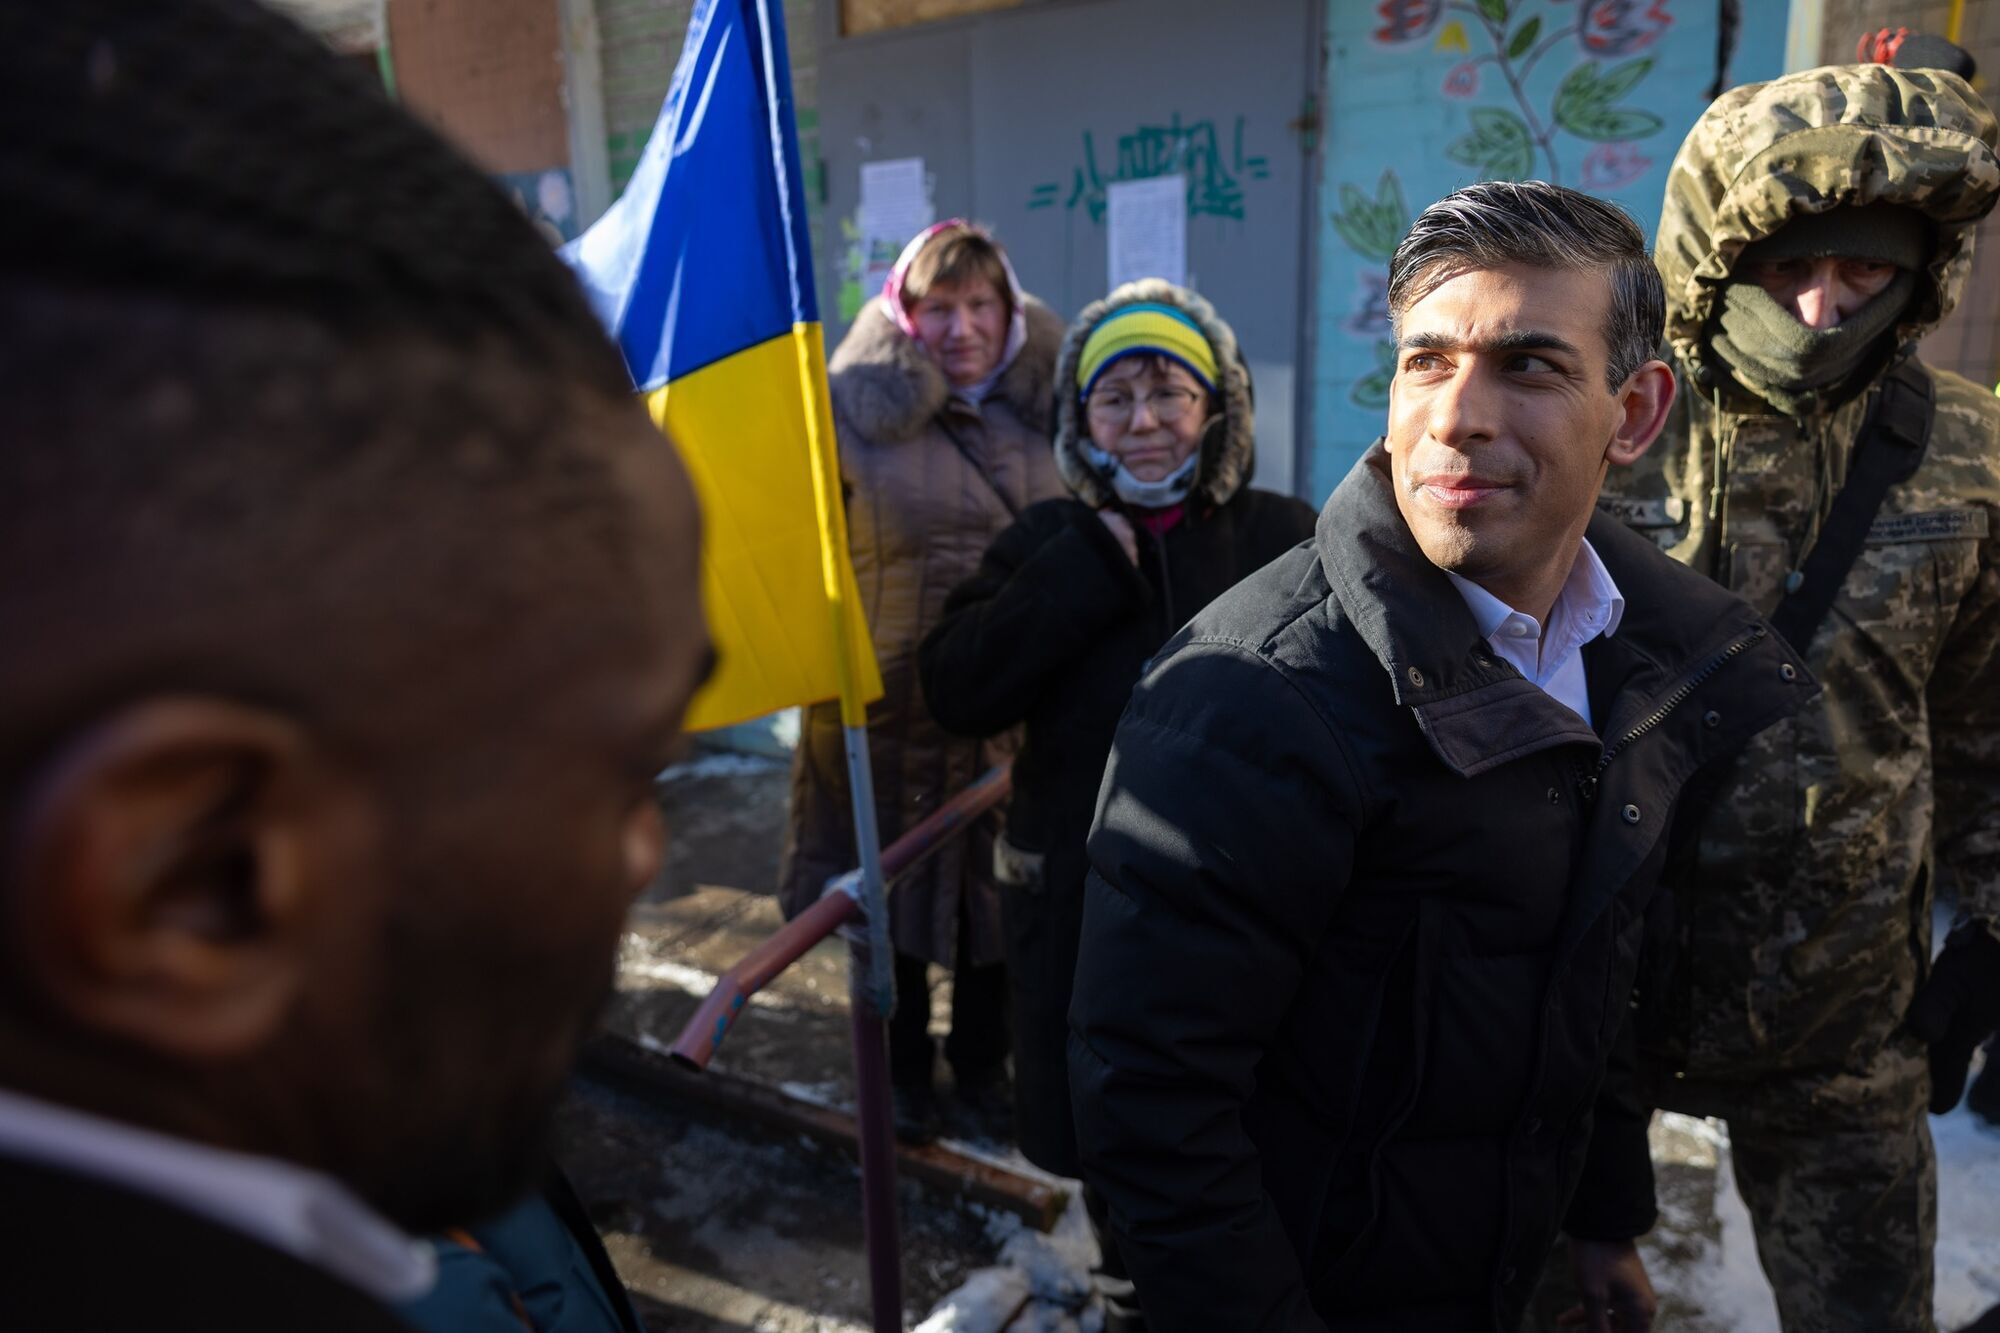 ''Ukraińcy, Wielka Brytania jest z wami!'' Rishi Sunak przybył z wizytą do Kijowa i ogłosi nowy pakiet pomocy dla Ukrainy